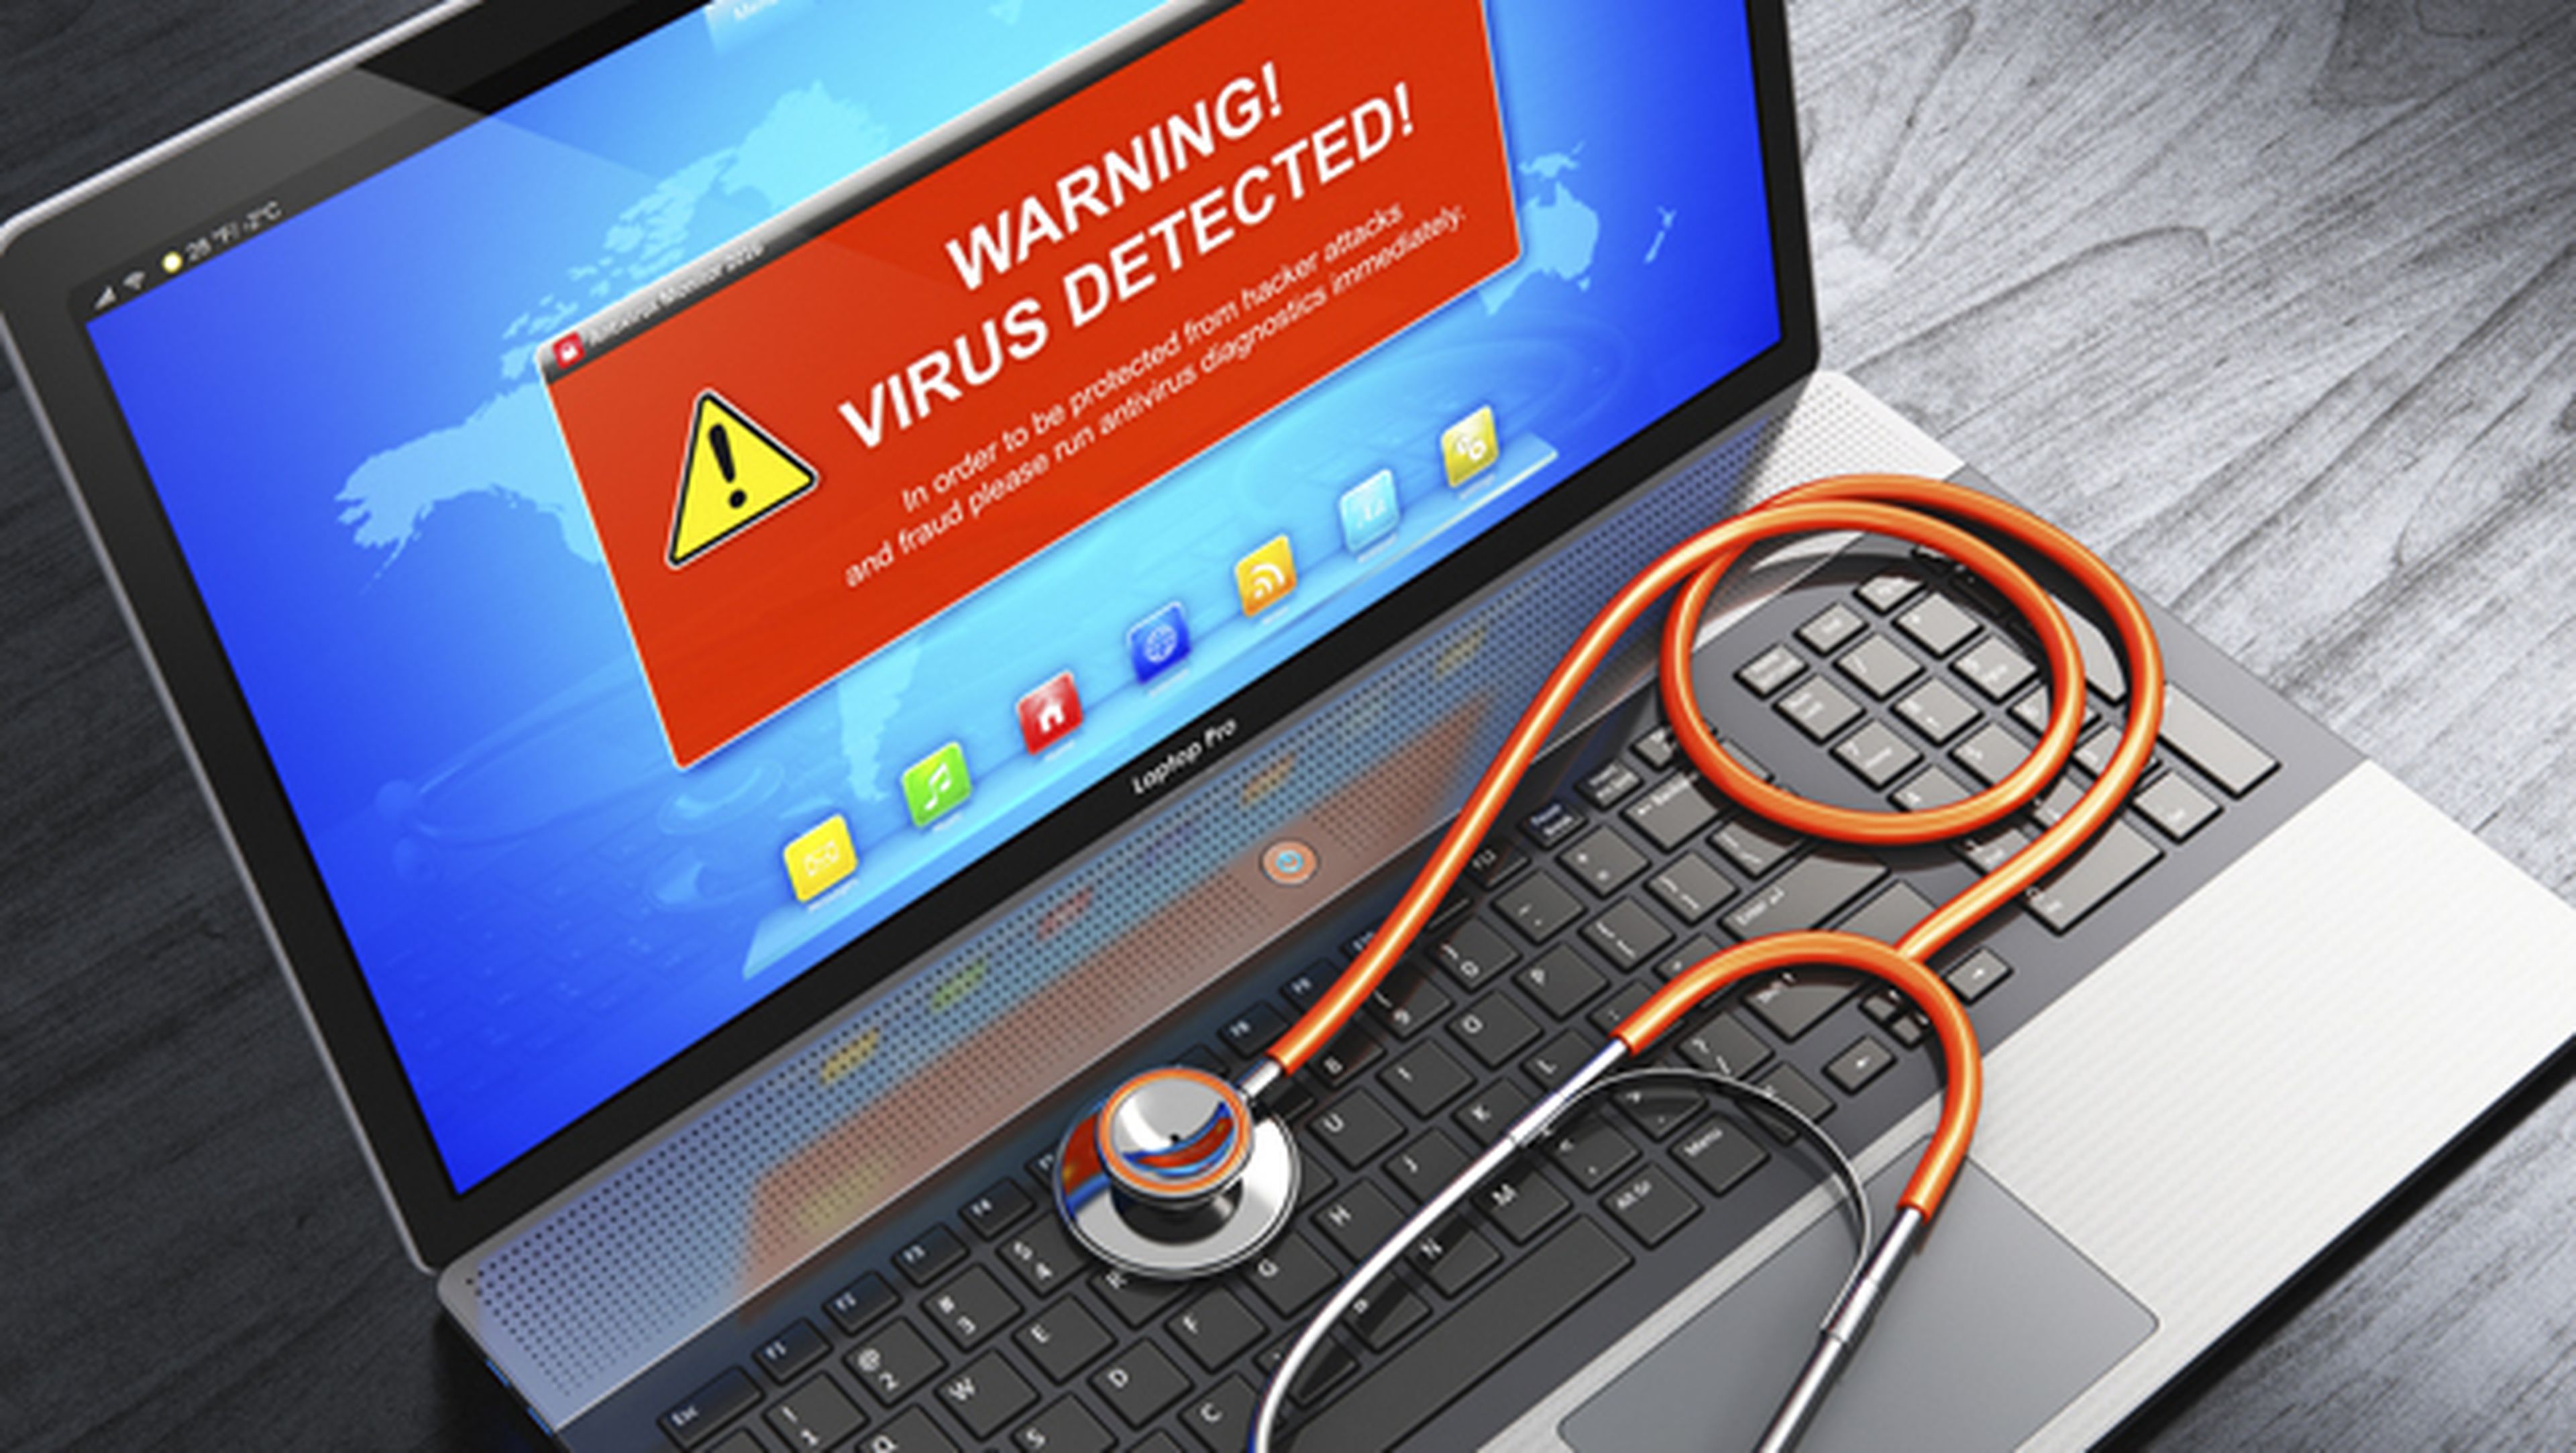 Un error en el antivirus Webroot bloquea Windows al considerarlo malware.